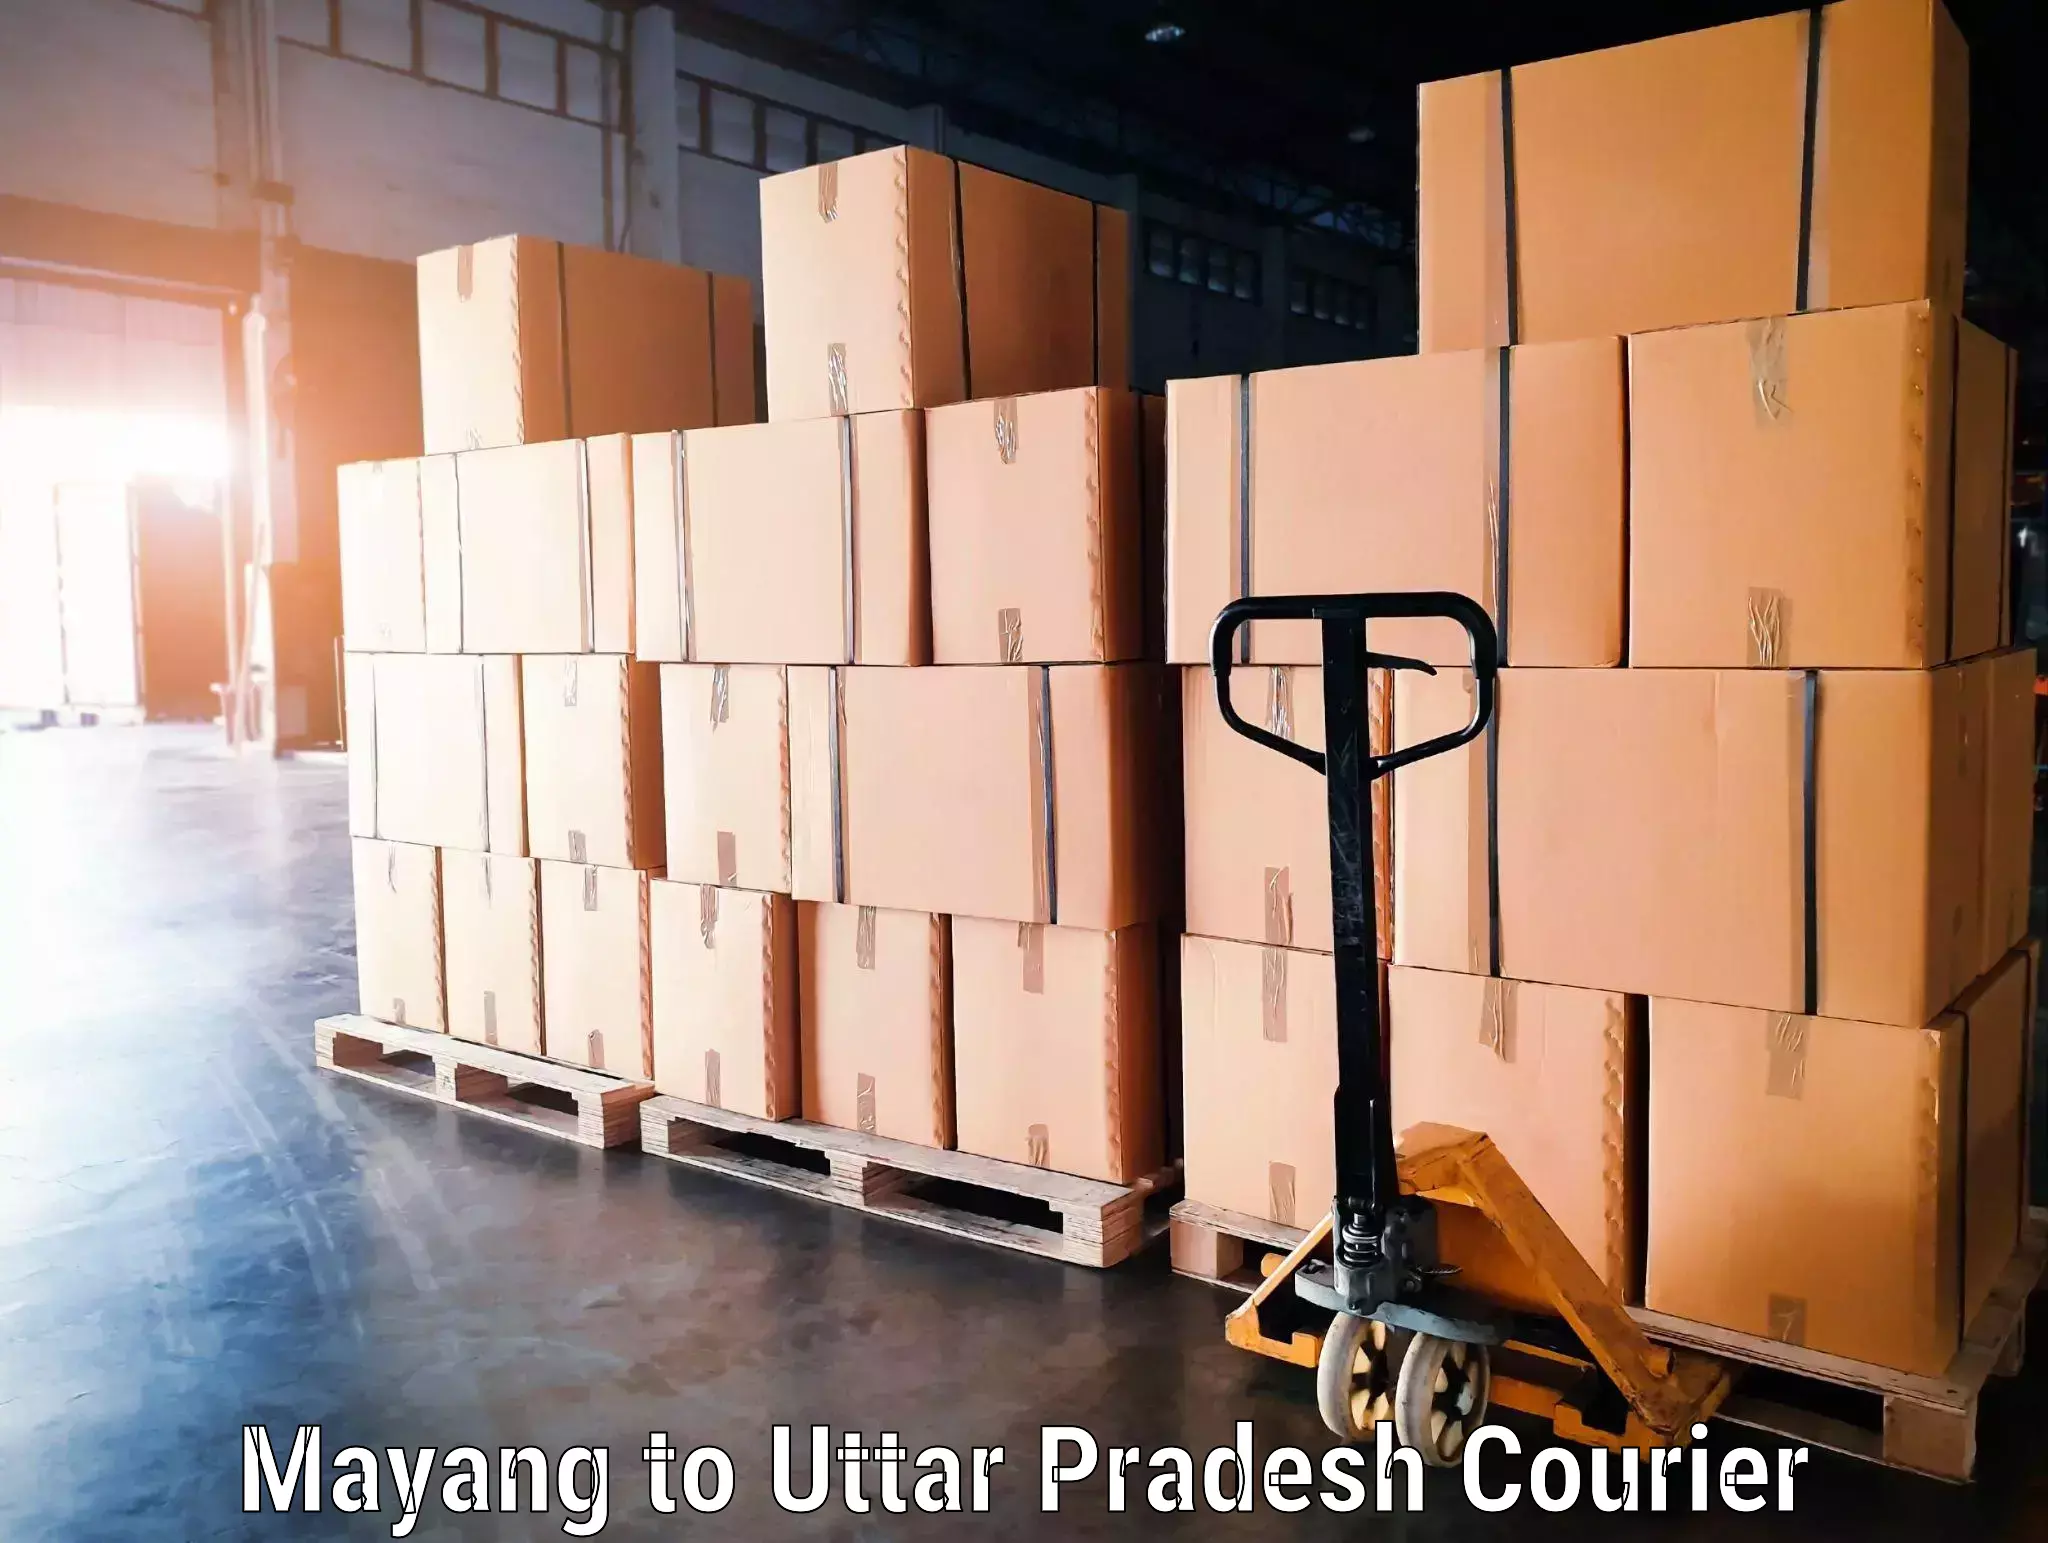 Holiday season luggage delivery Mayang to Sahatwar